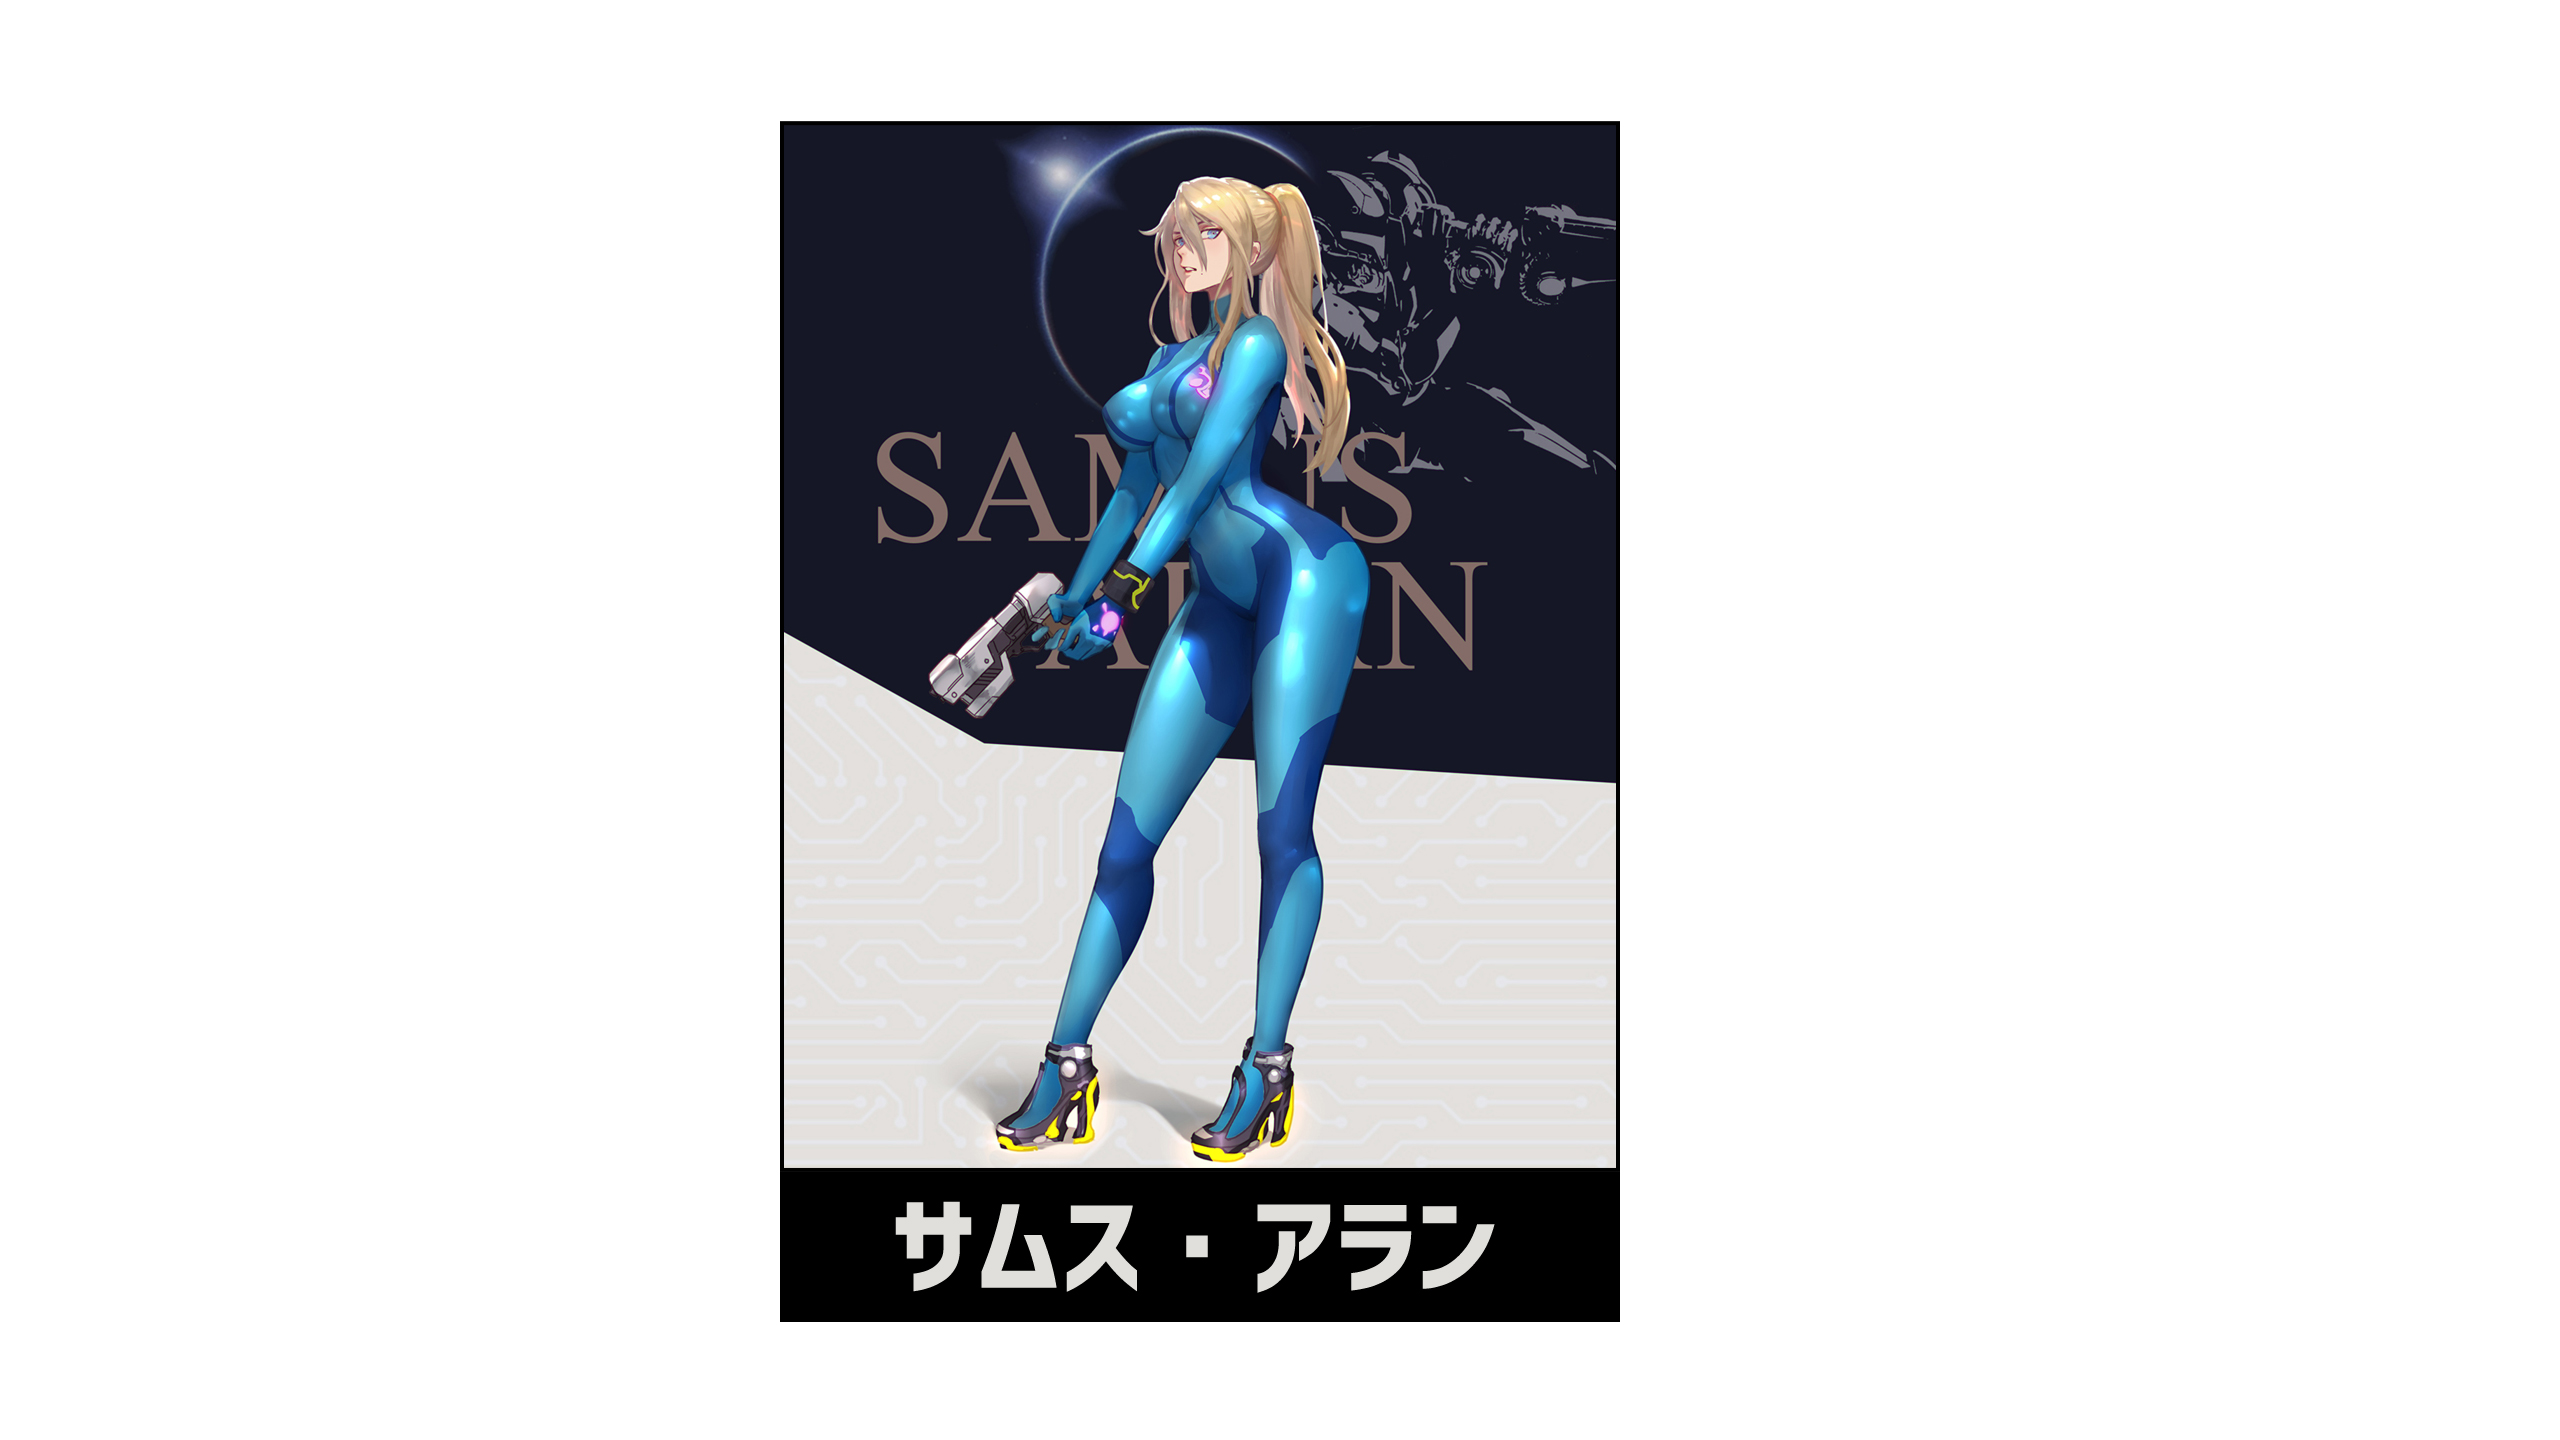 Metroid Metroid Prime Samus Aran White Background Blonde High Heeled Shoes Weapon Pistol Gun Video G 2560x1440